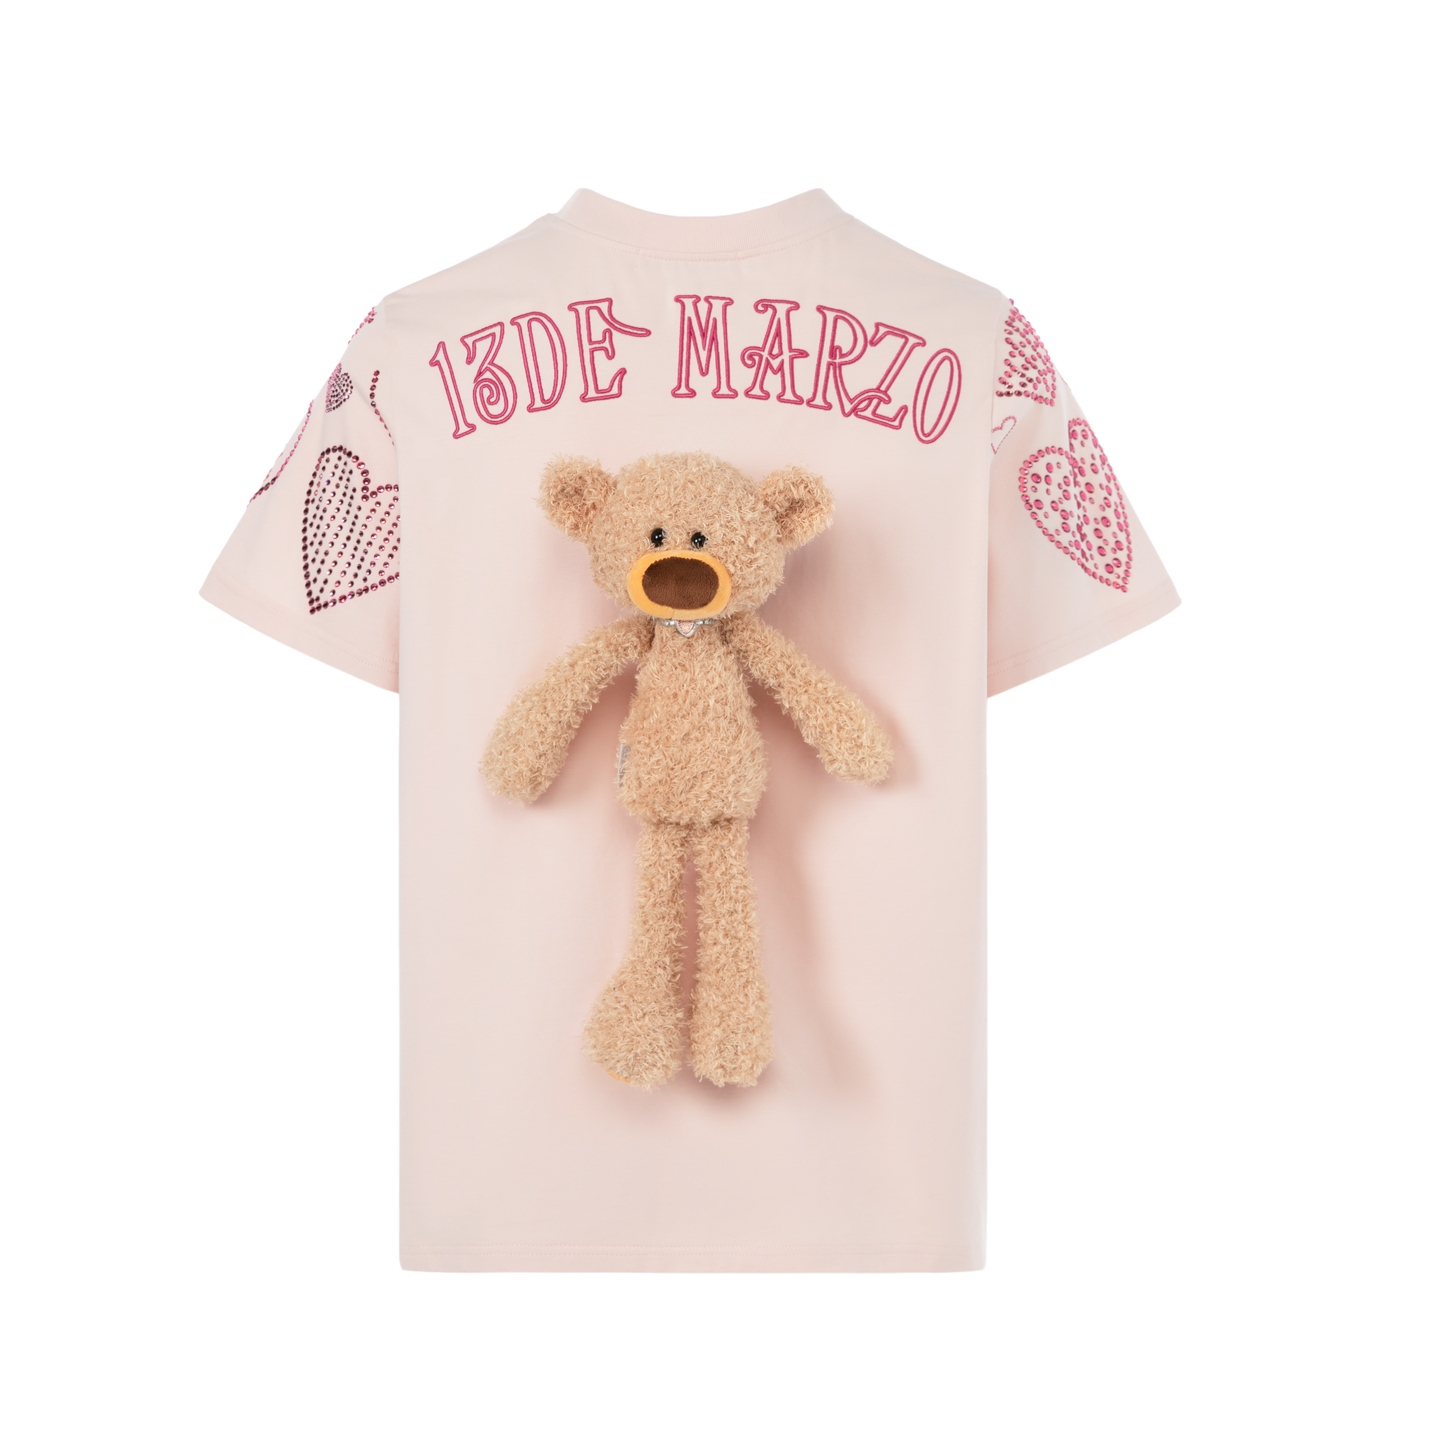 13DE MARZO Doozoo Speaker Heart T-shirt